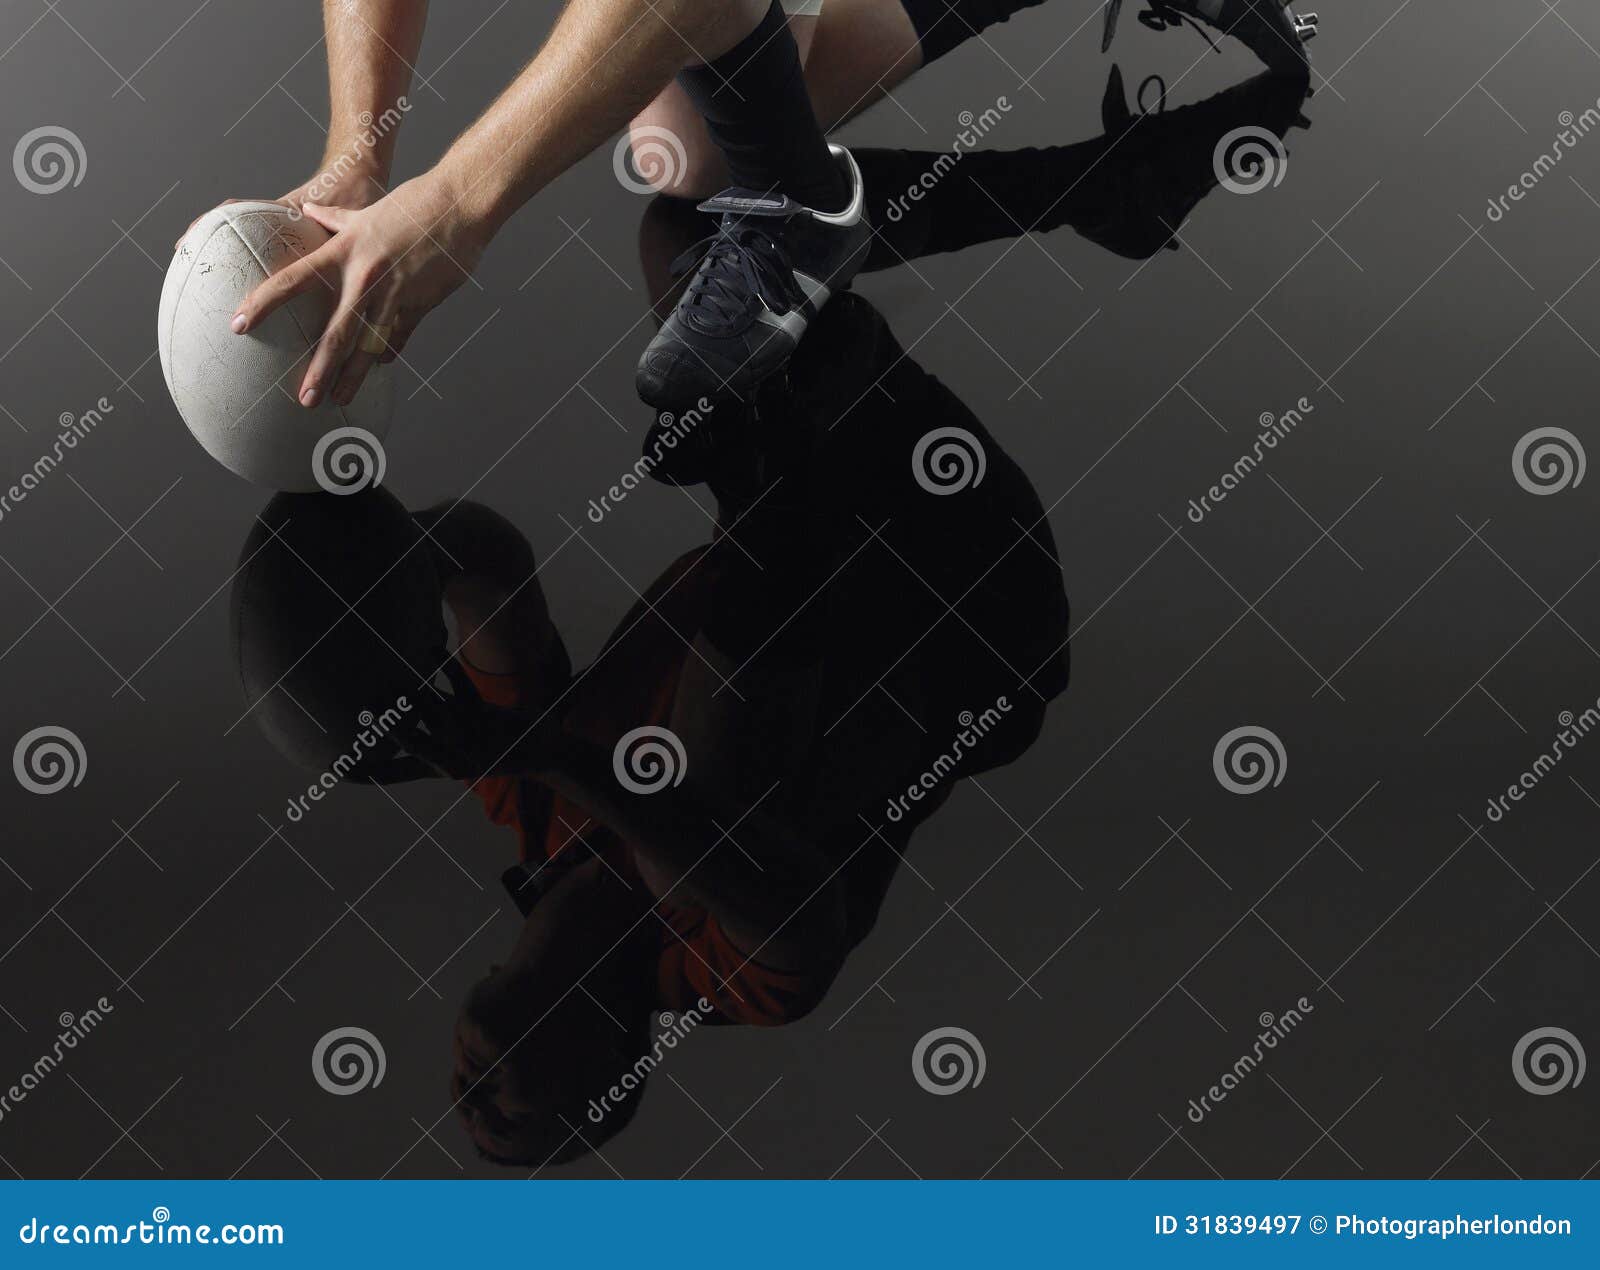 Reflexion av spelaren på ett knä med rugbybollen. Låg avsnitt för Closeup och reflexion av en rugbyspelare som knäfaller på ett knä med bollen